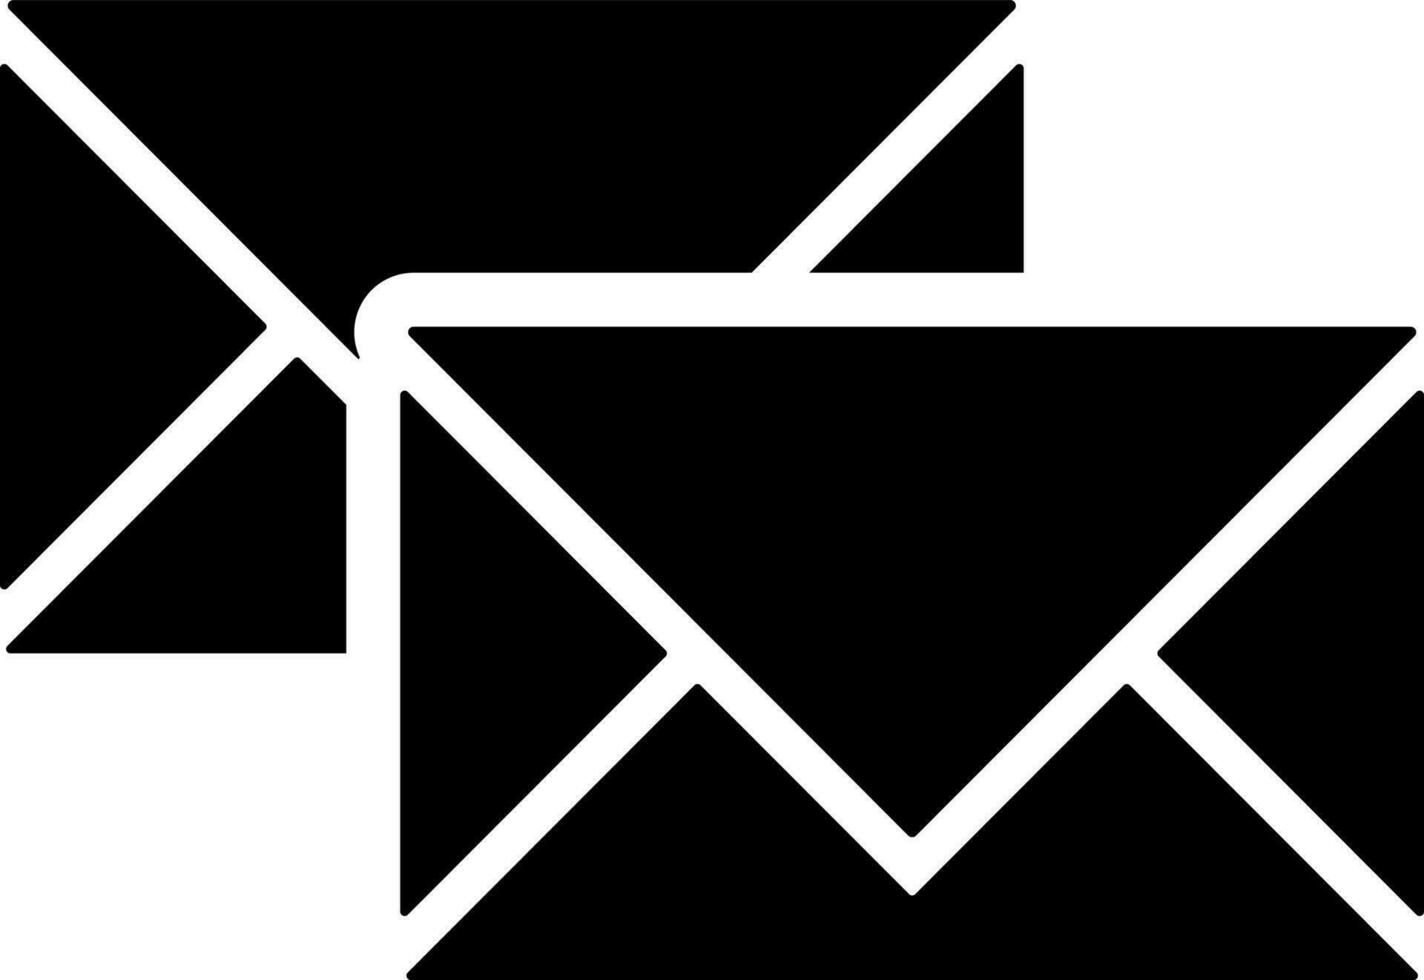 Vektor Illustration von Mail oder Briefumschlag Symbol.